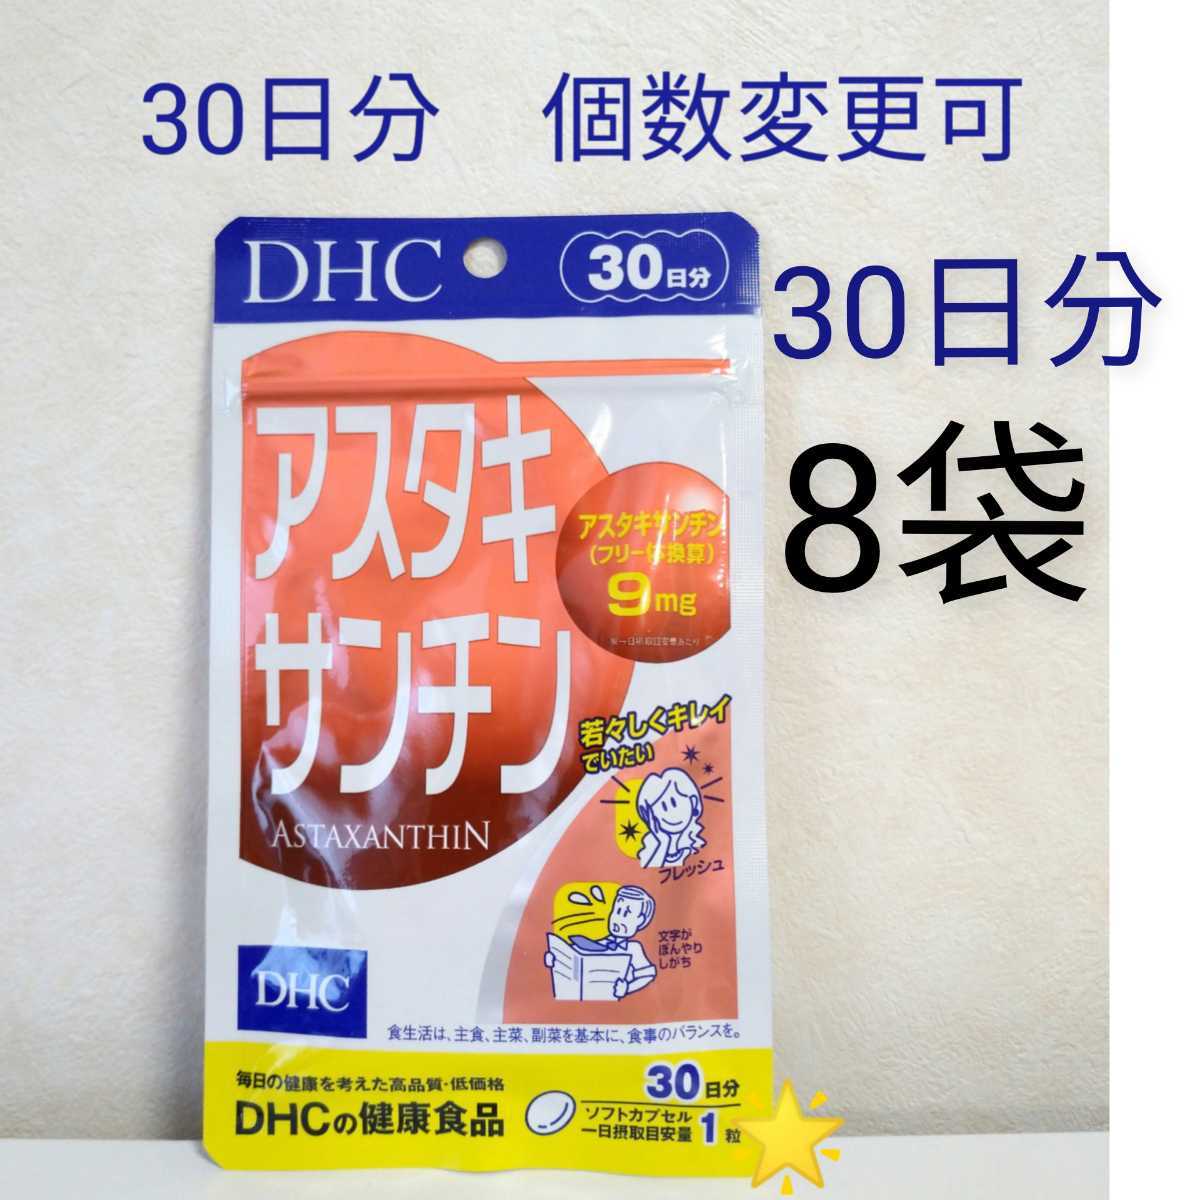 468円 日本初の DHC アスタキサンチン 30日分